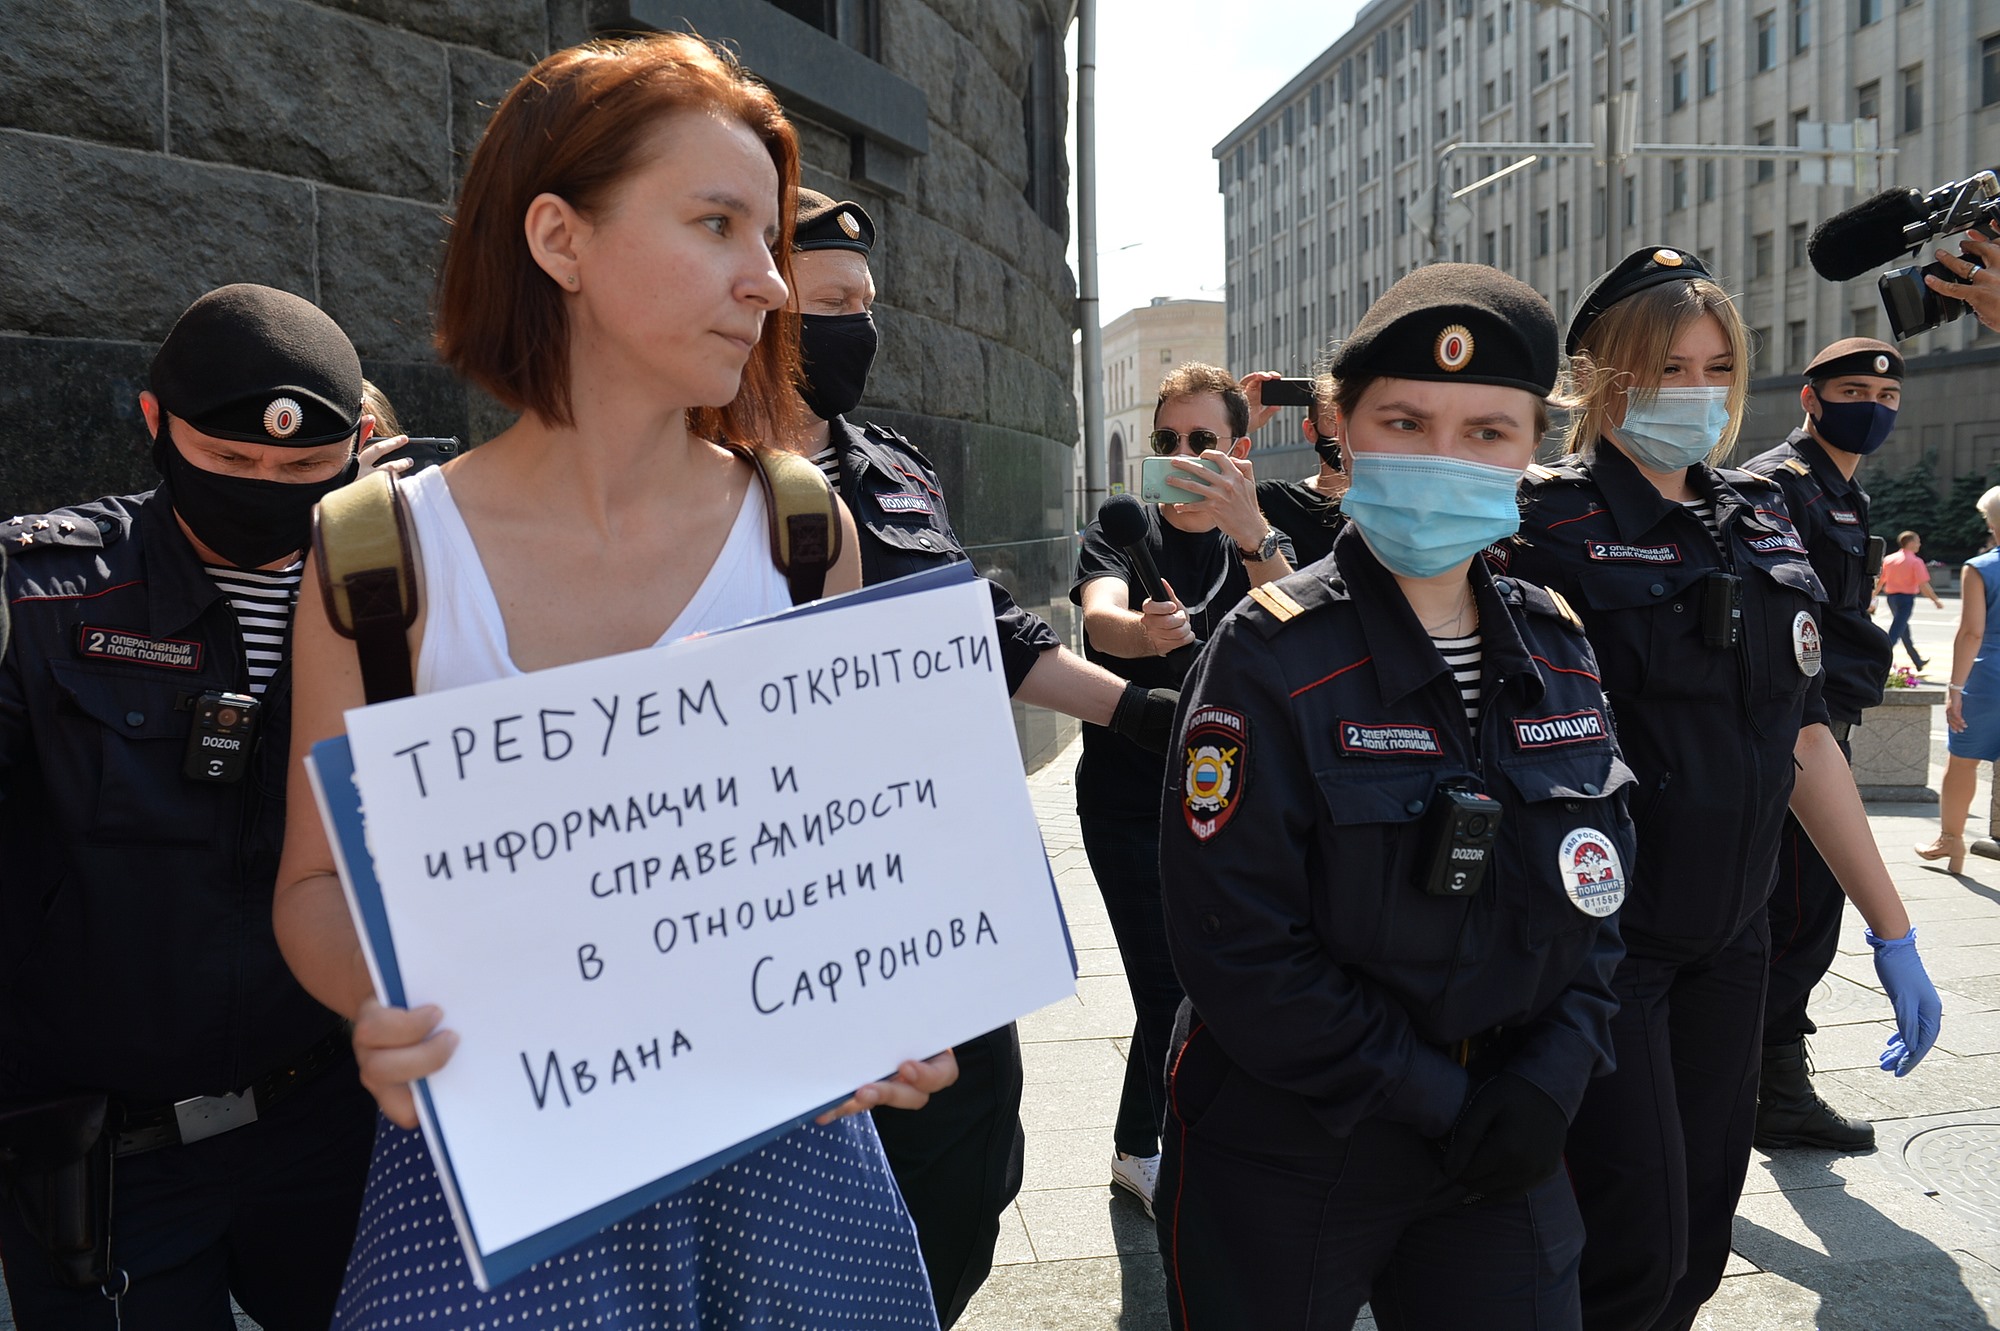 Мобилизация демонстрации. Митинги пикеты. Протесты в России. Журналист на митинге.